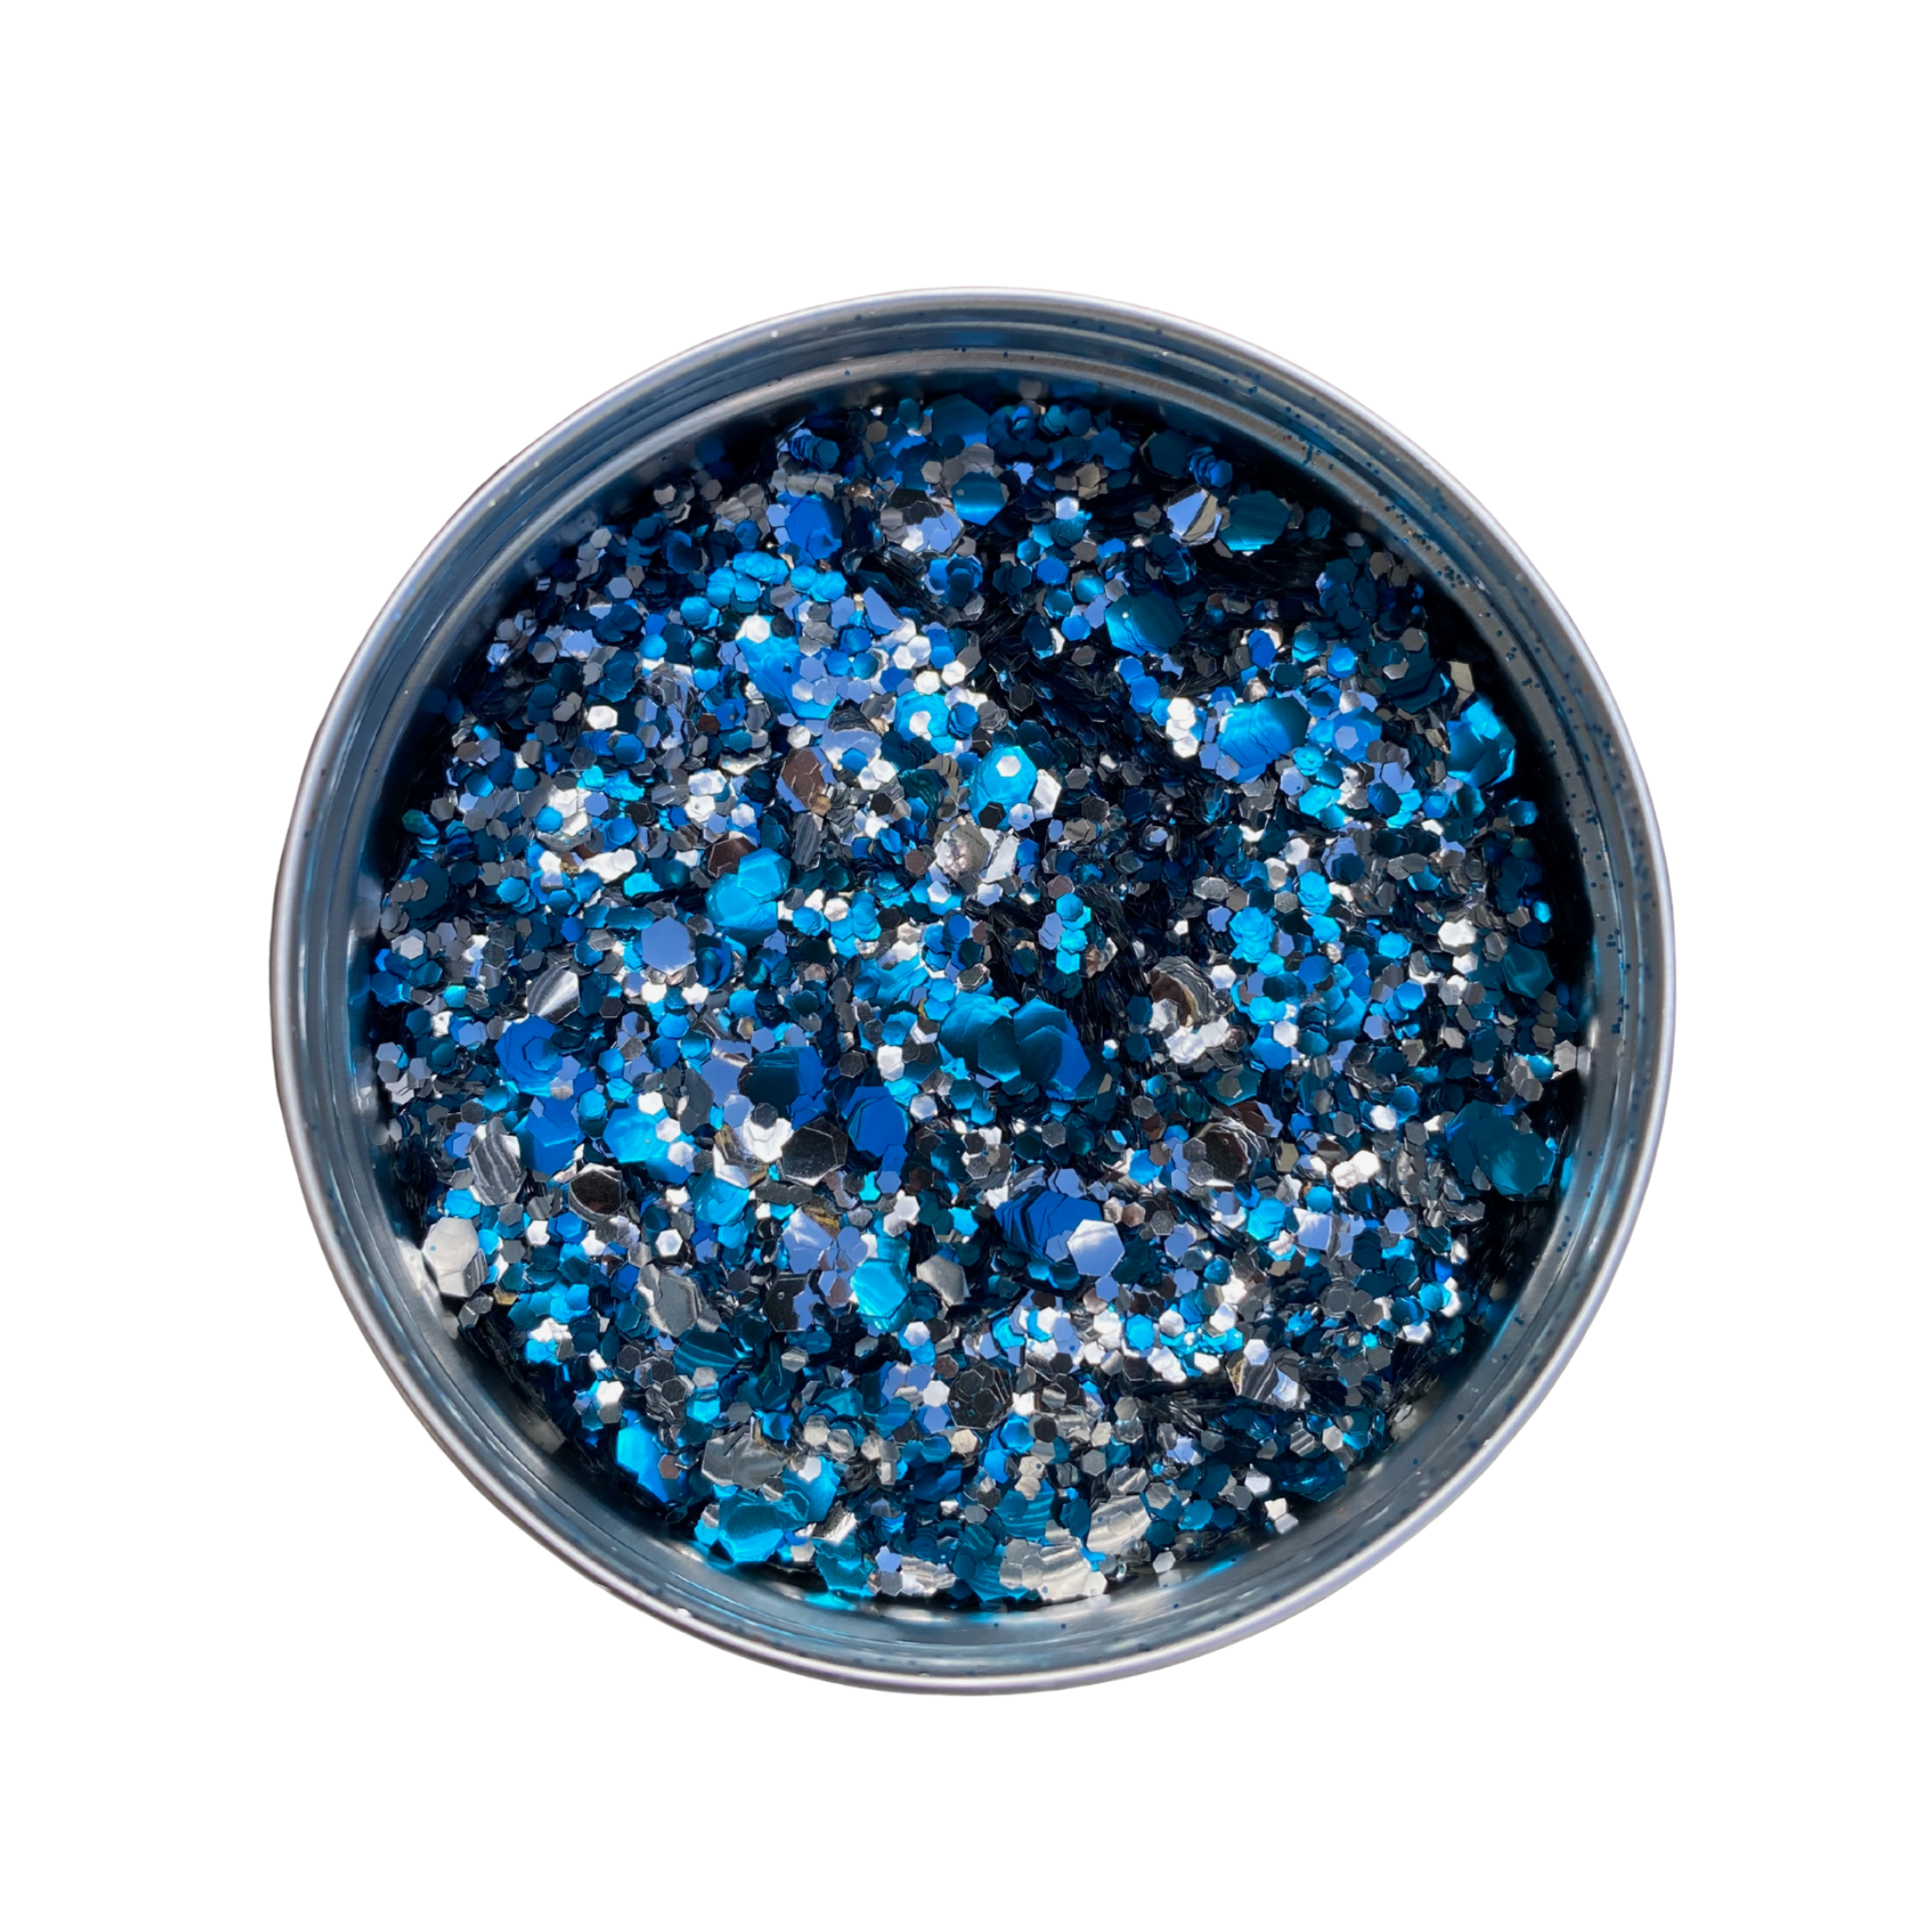 Moon River Biodegradable Glitter Blend by Luminosity Glitter in an aluminium pot